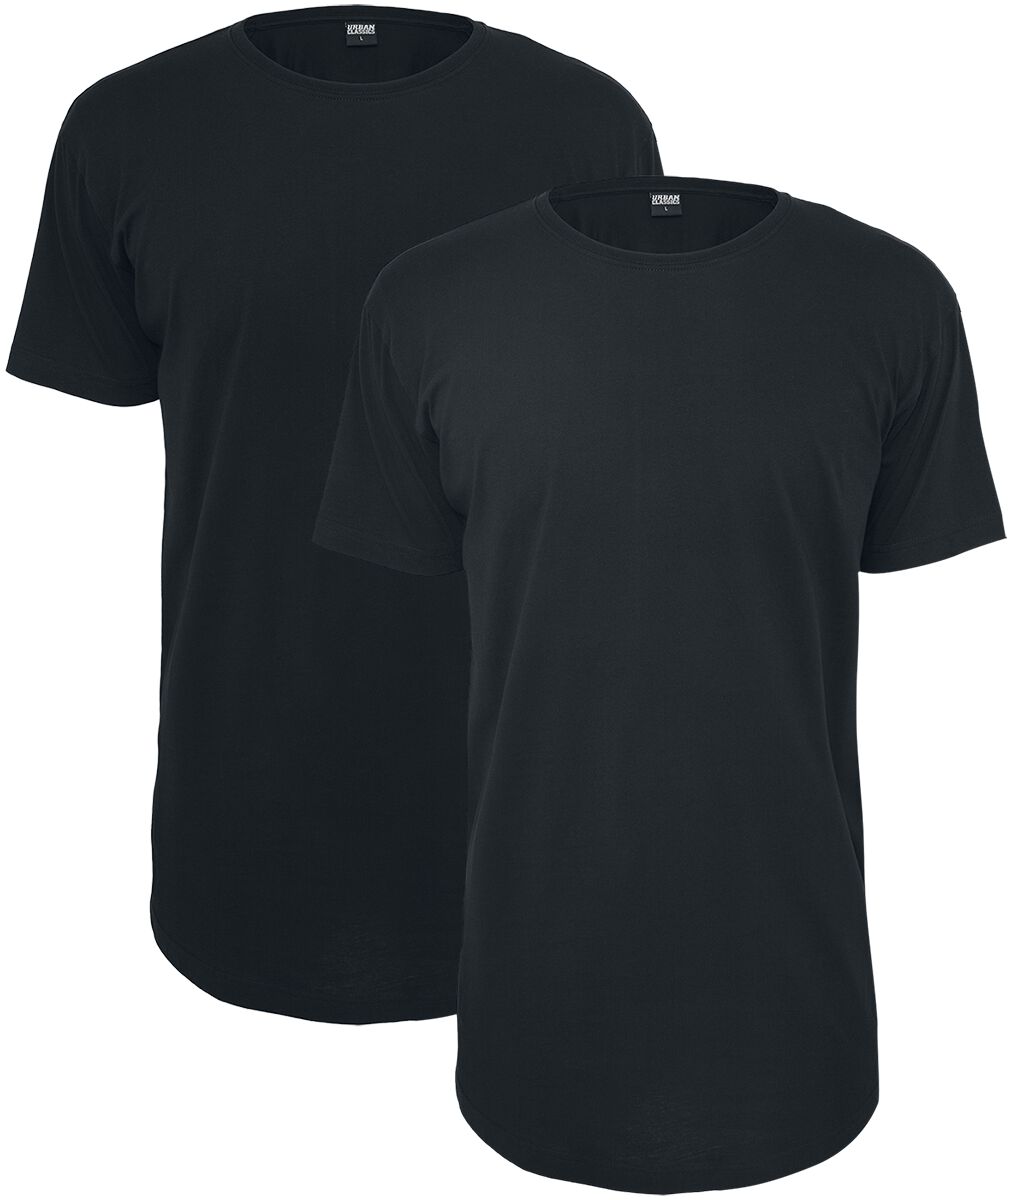 Urban Classics T-Shirt - Pre-Pack Shaped Long Tee 2-Pack - XS bis 5XL - für Männer - Größe XS - schwarz